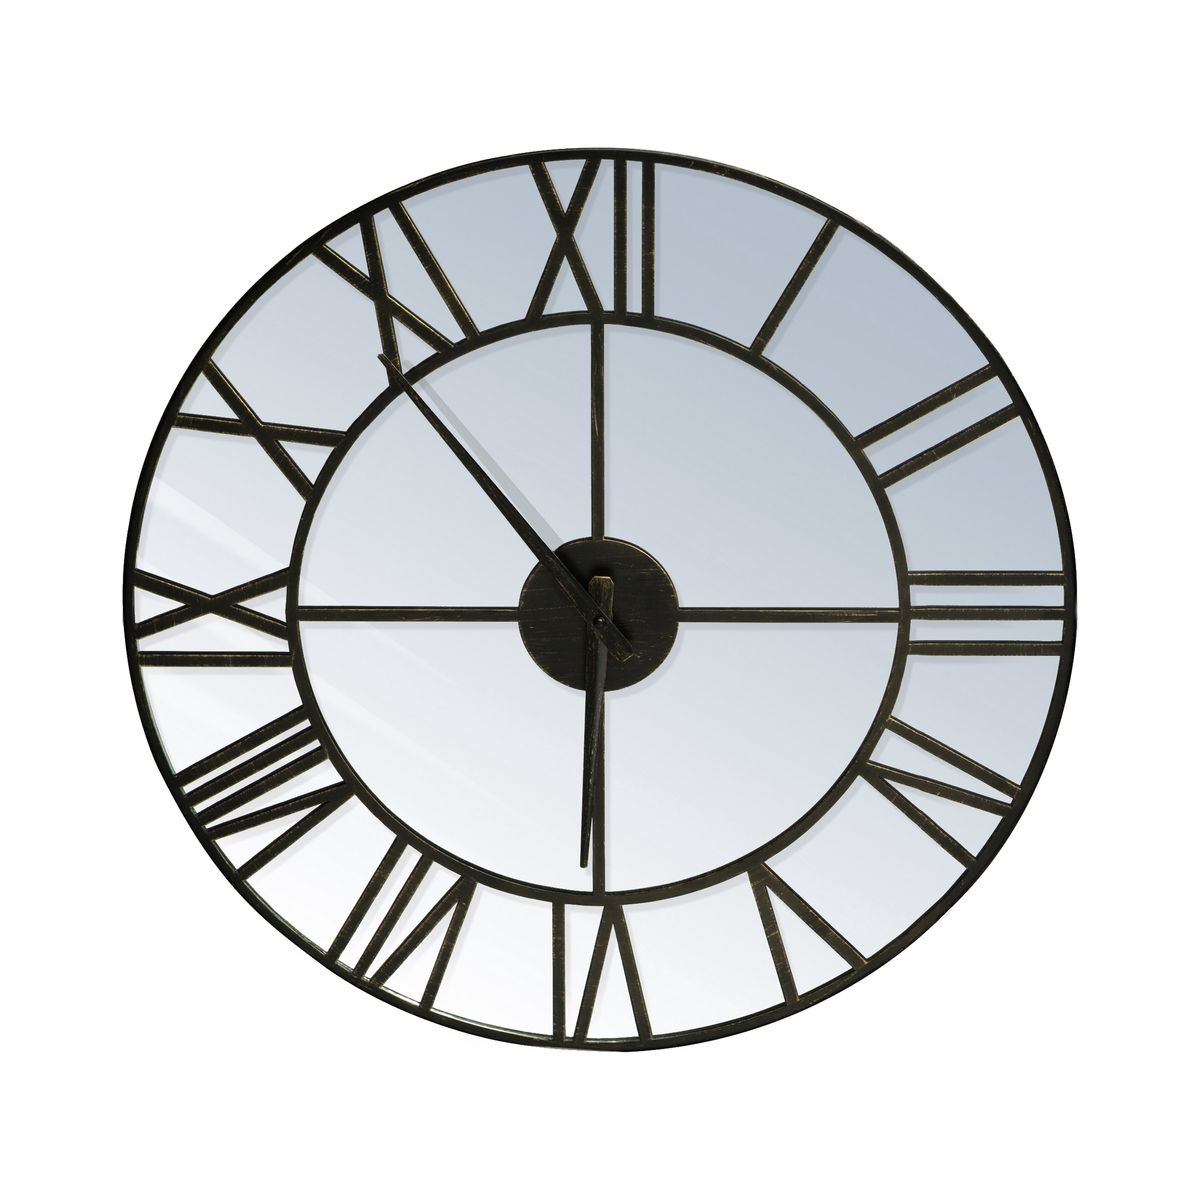 Dekoračné nástenné hodiny ZE/08 v štýle vintage priemer 50 cm